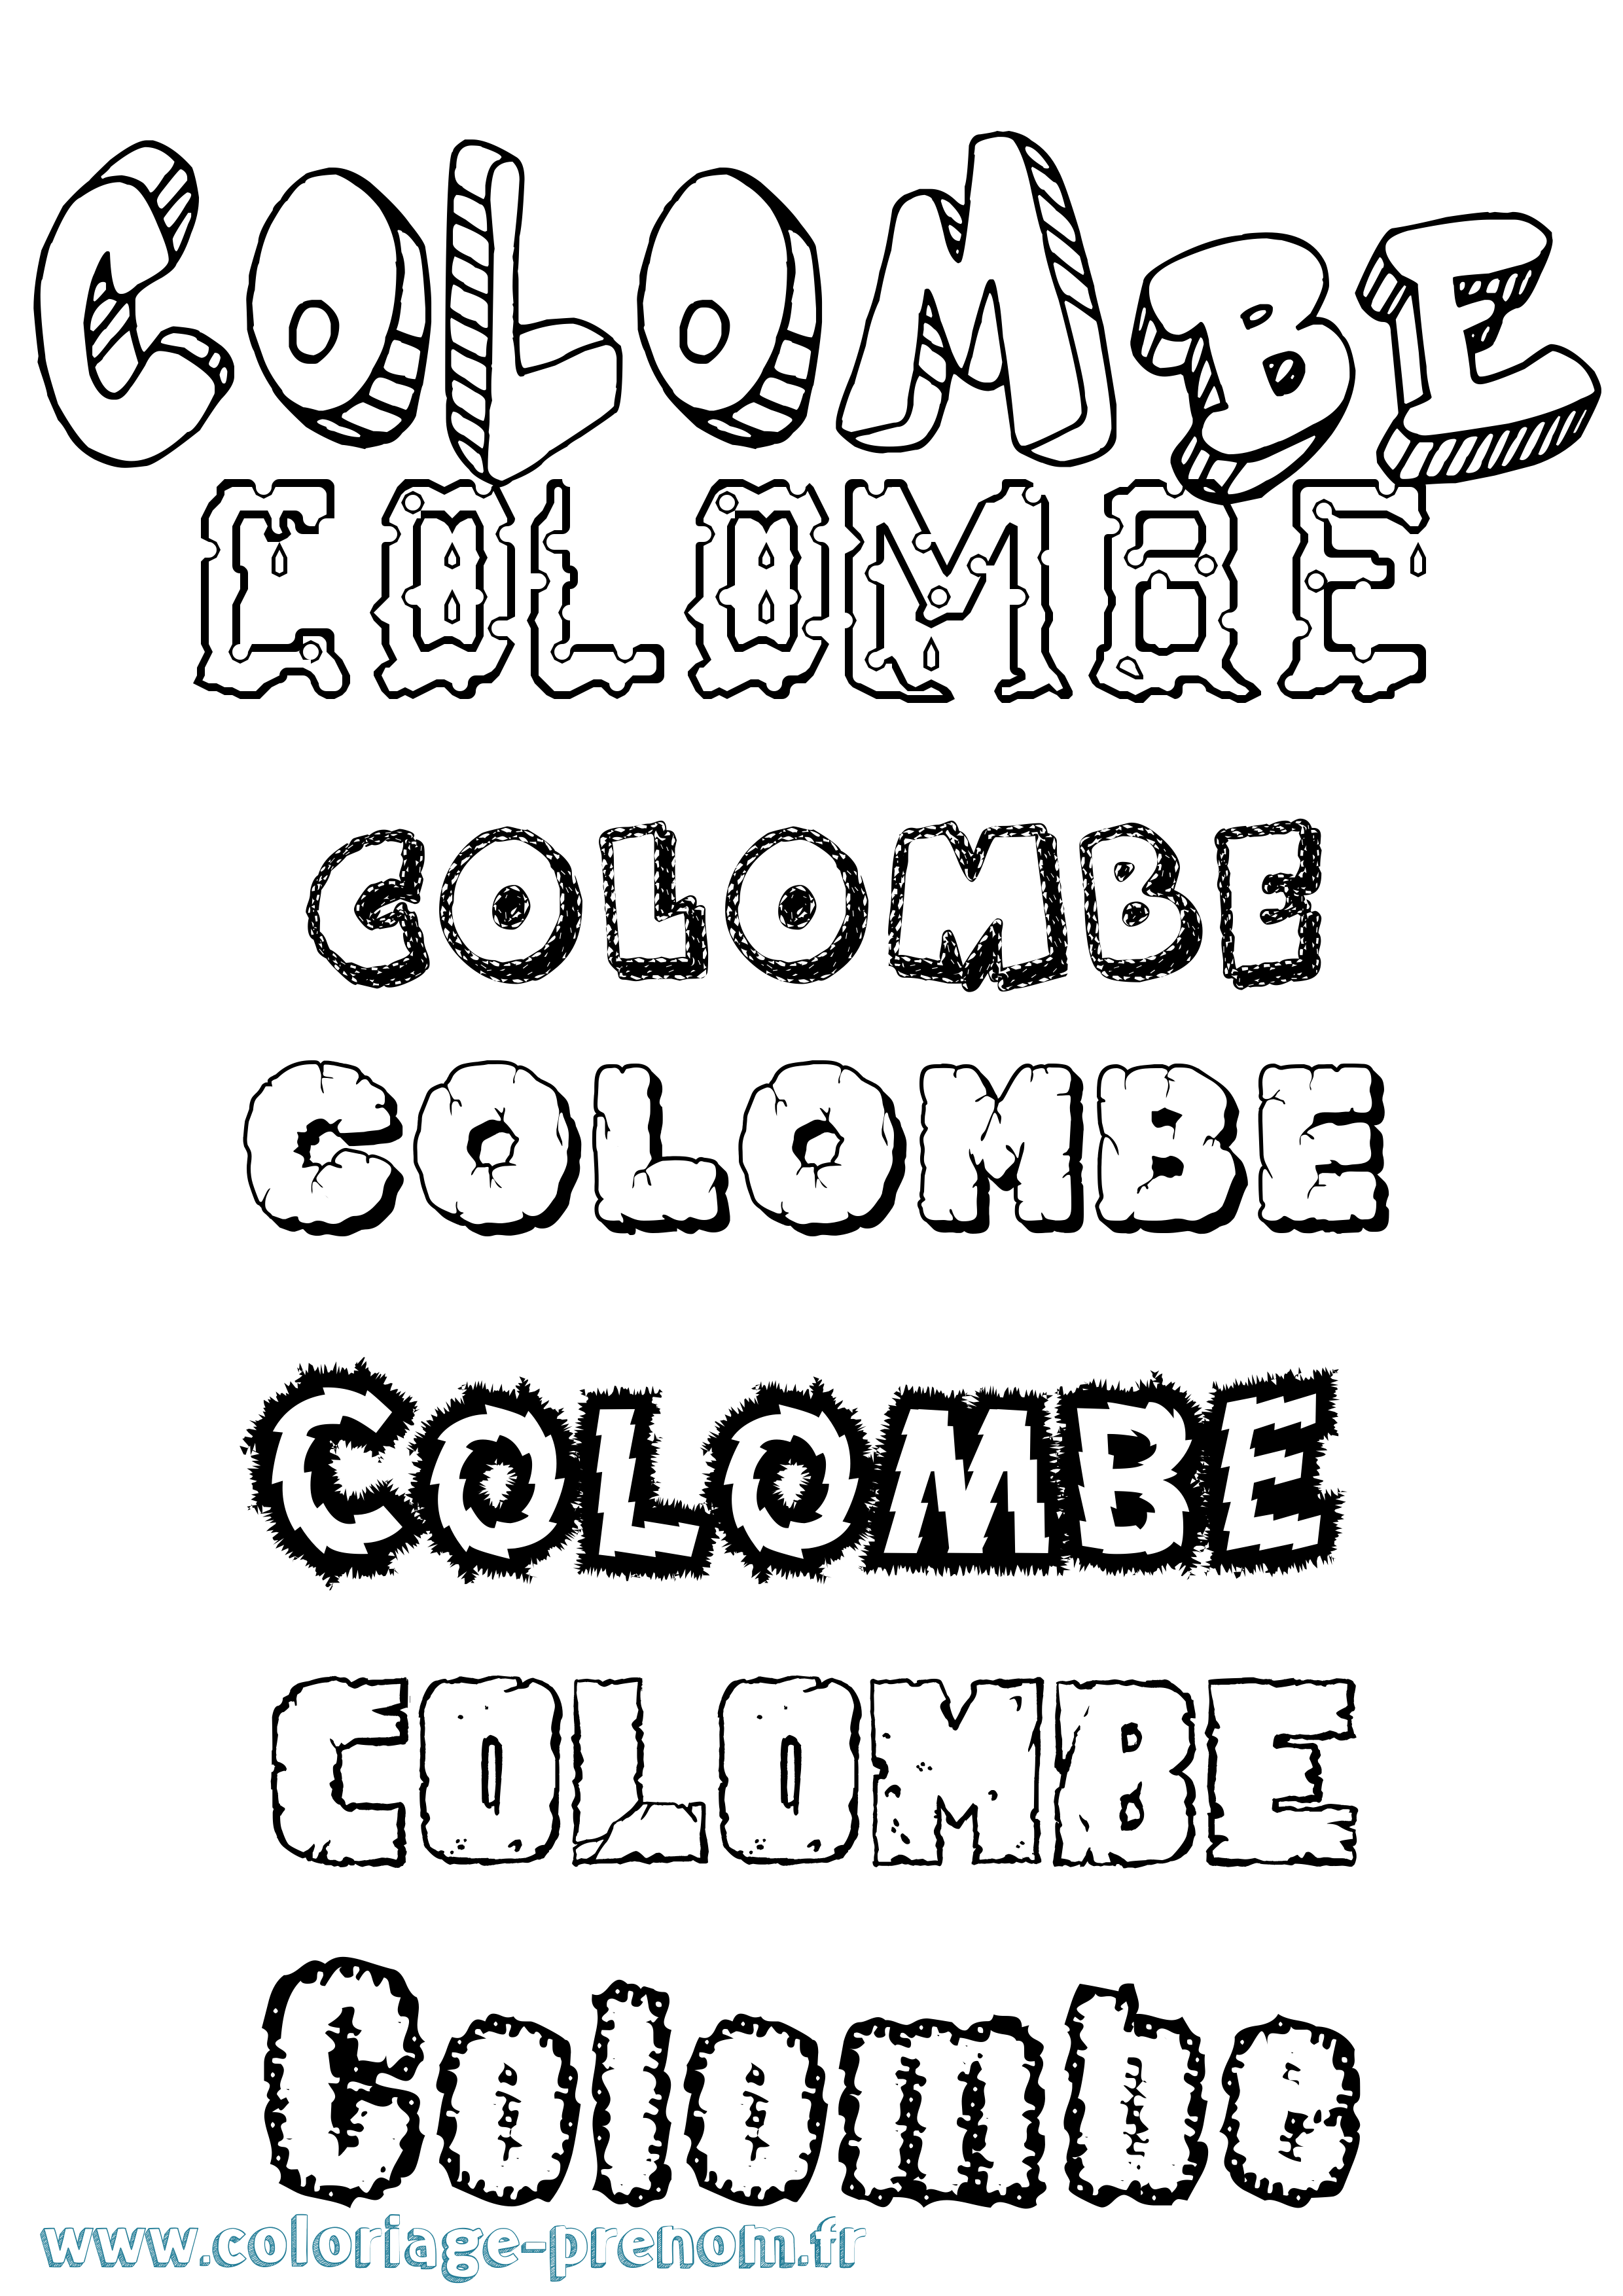 Coloriage prénom Colombe